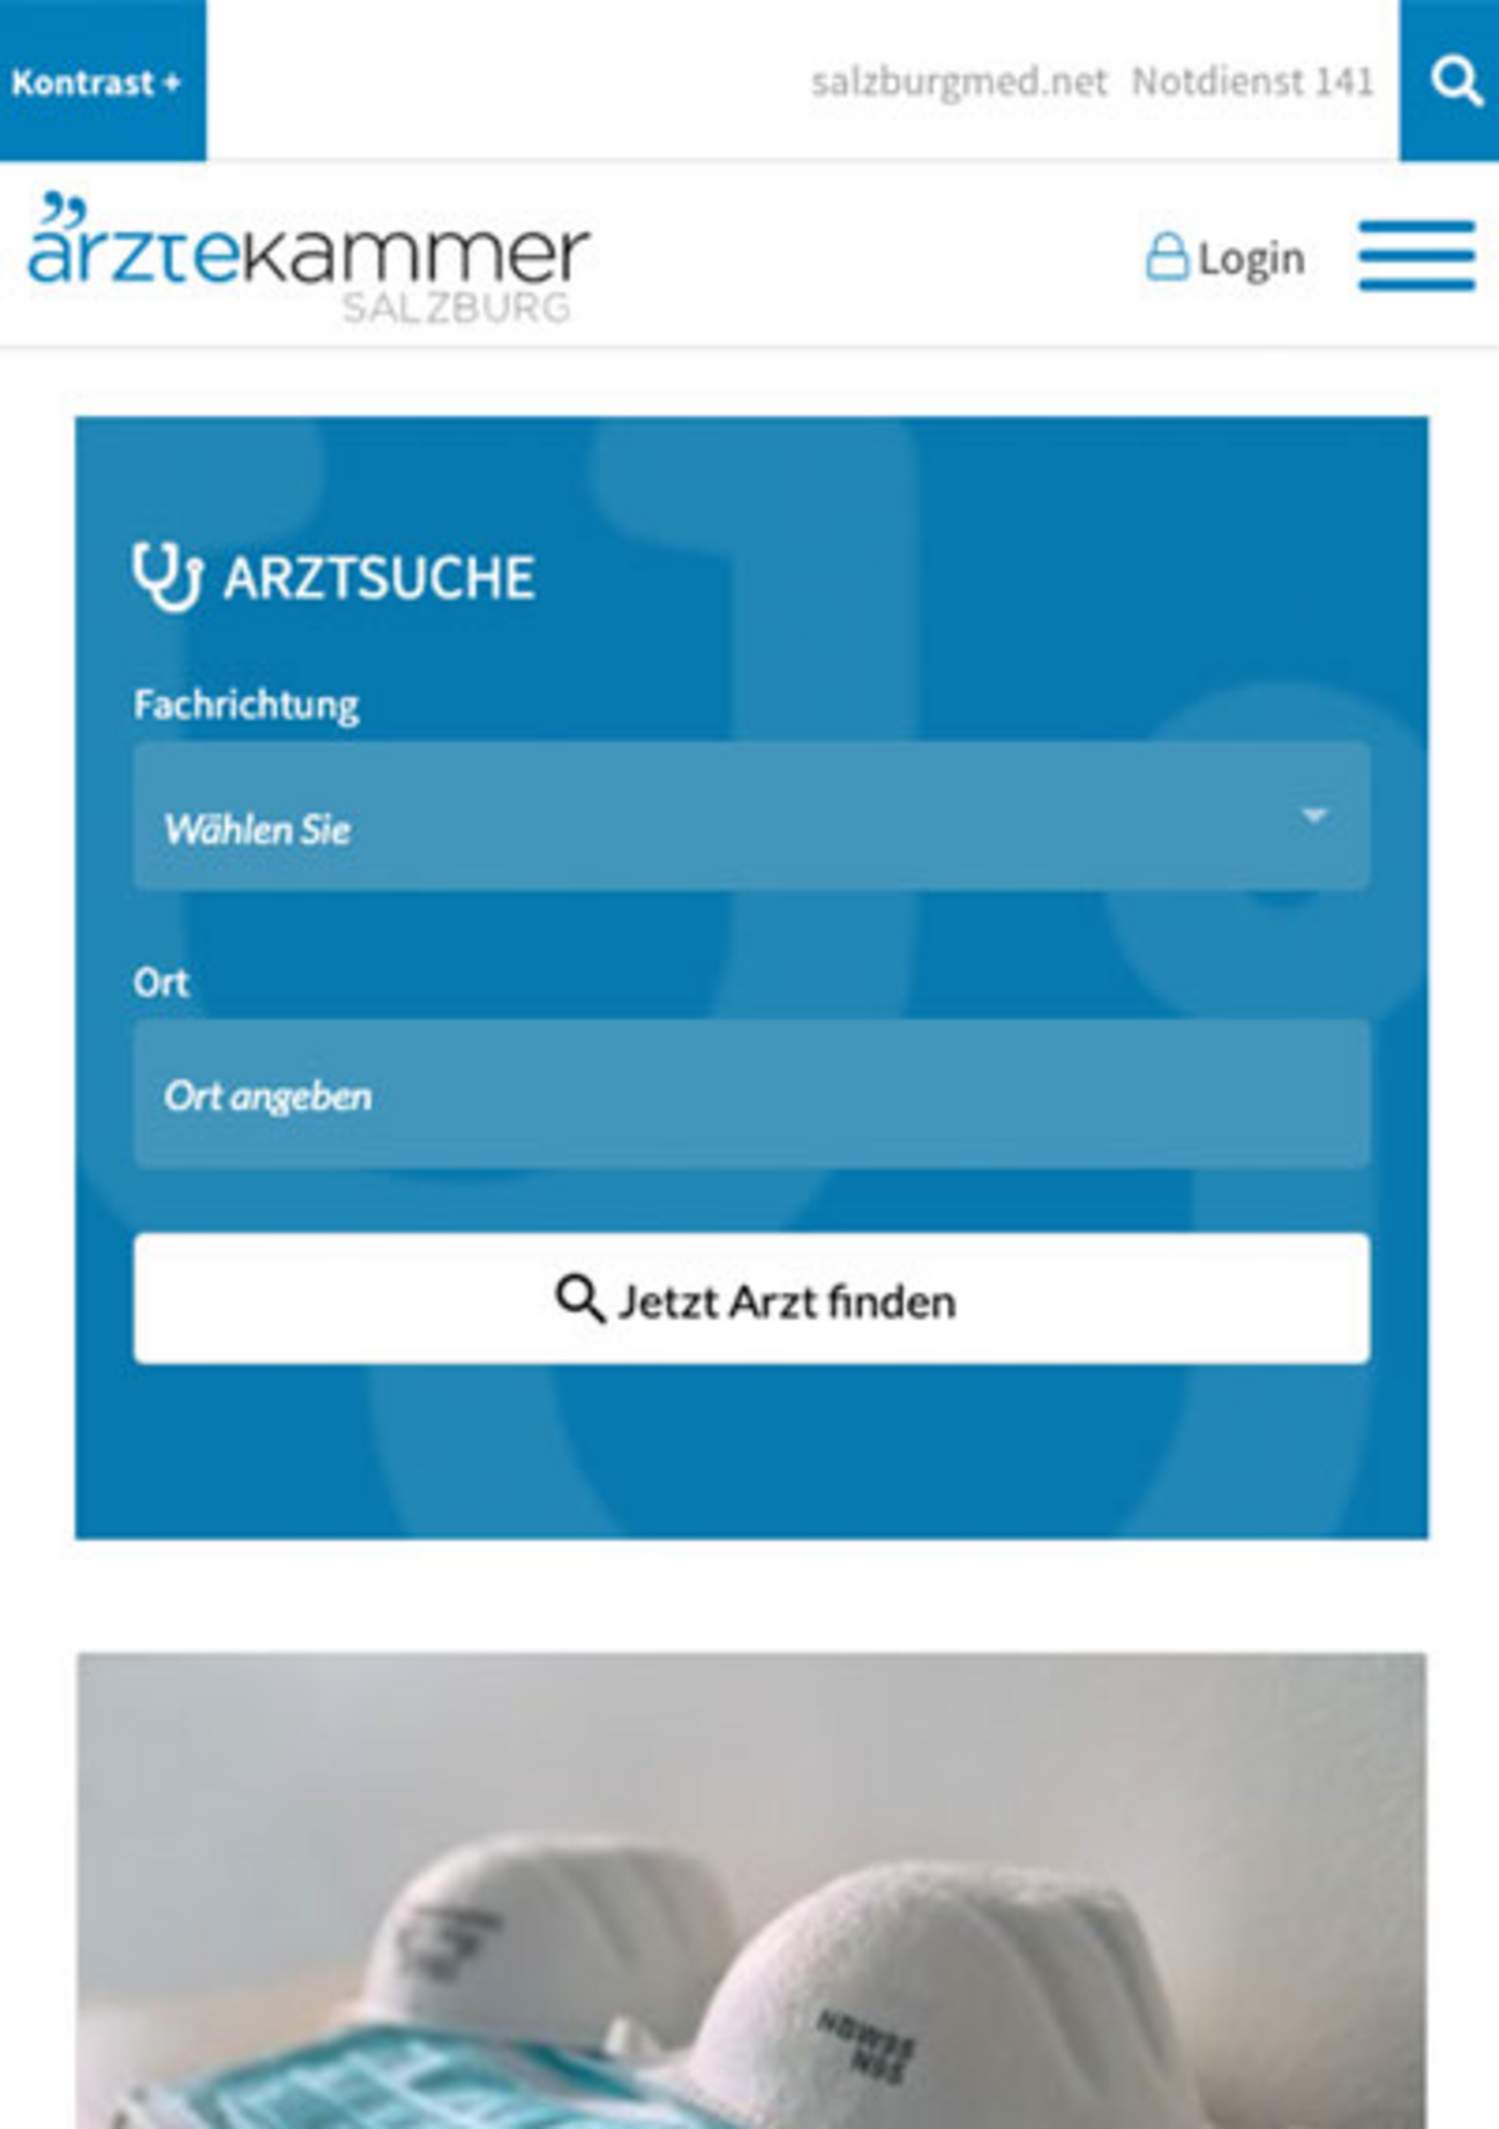 Ärztekammer für Salzburg / TYPO3 Website / responsive Website